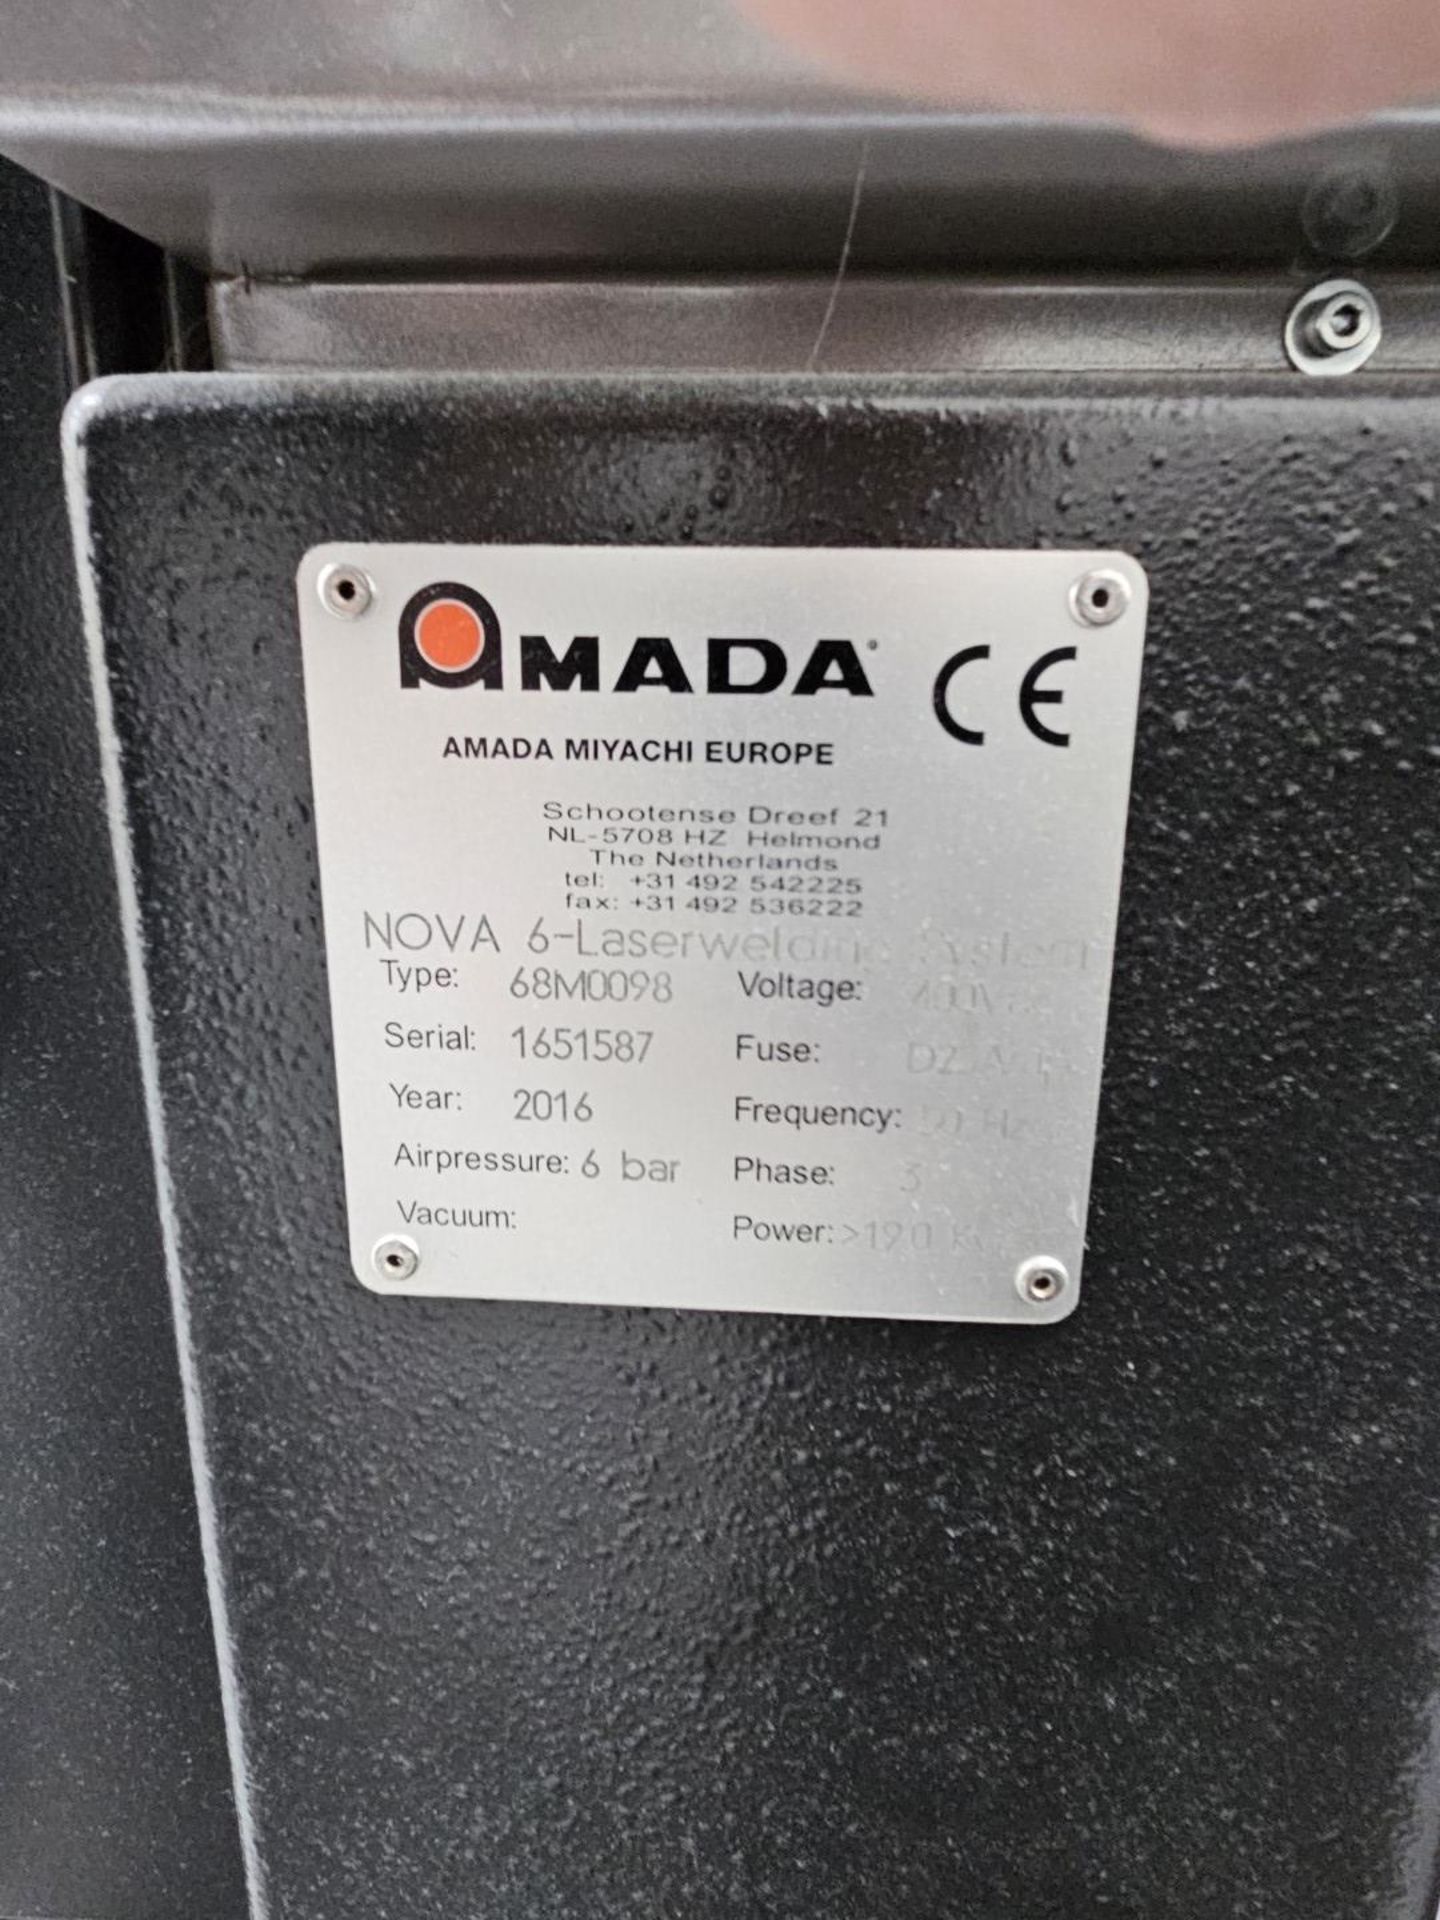 1 x Amada Miyachi Nova 6 Laser CNC Welding Workstation System - Type: 68M0098 - Year: 2016 - Image 6 of 20